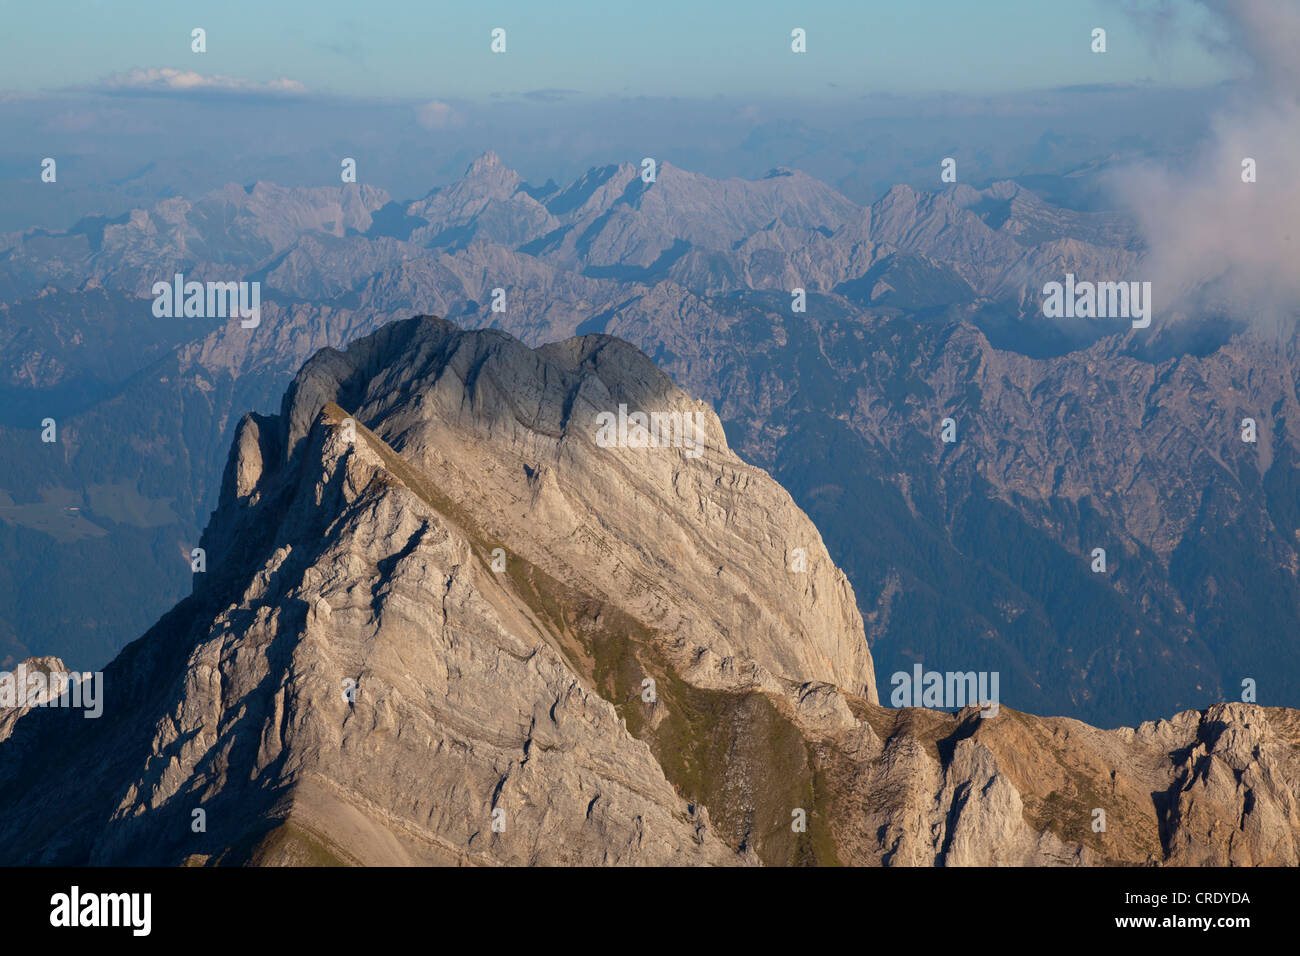 Soirée mod dans le gamme de l'Alpstein avec vue sur le Mt Altmann de Mt Saentis, Suisse, Europe Banque D'Images